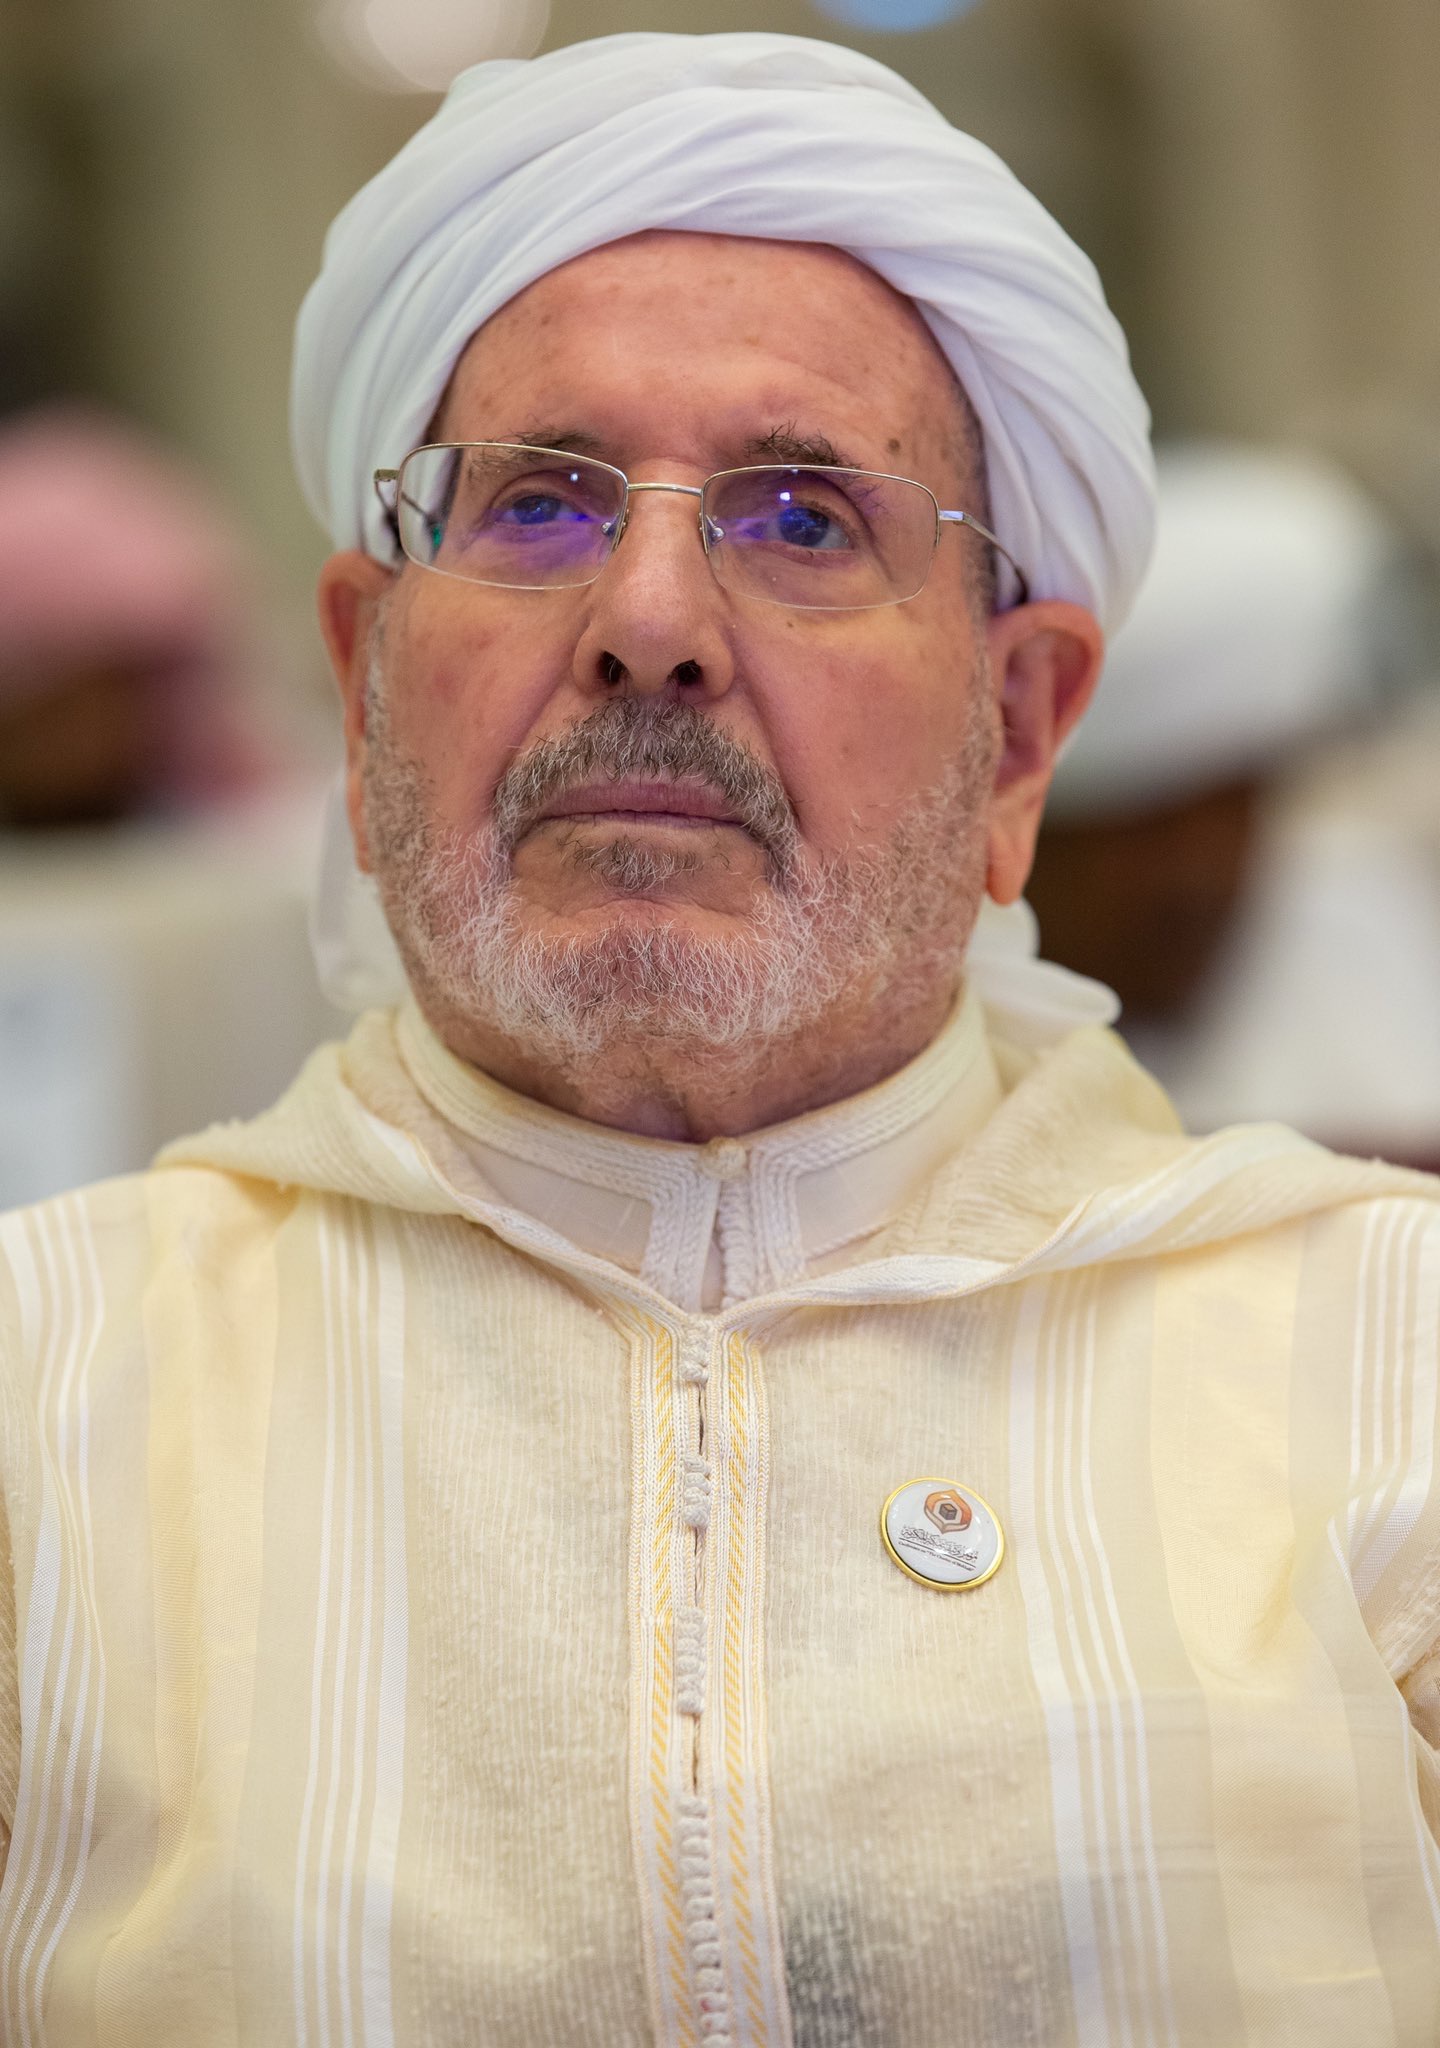 عزت مآب شیخ ڈاکٹر بو عبد اللہ غلام اللہ، سپریم اسلامی کونسل جزائر کے صدر، پیرس کانفرنس برائے یکجہتی وامن کے شرکاء میں سر فہرست تھے